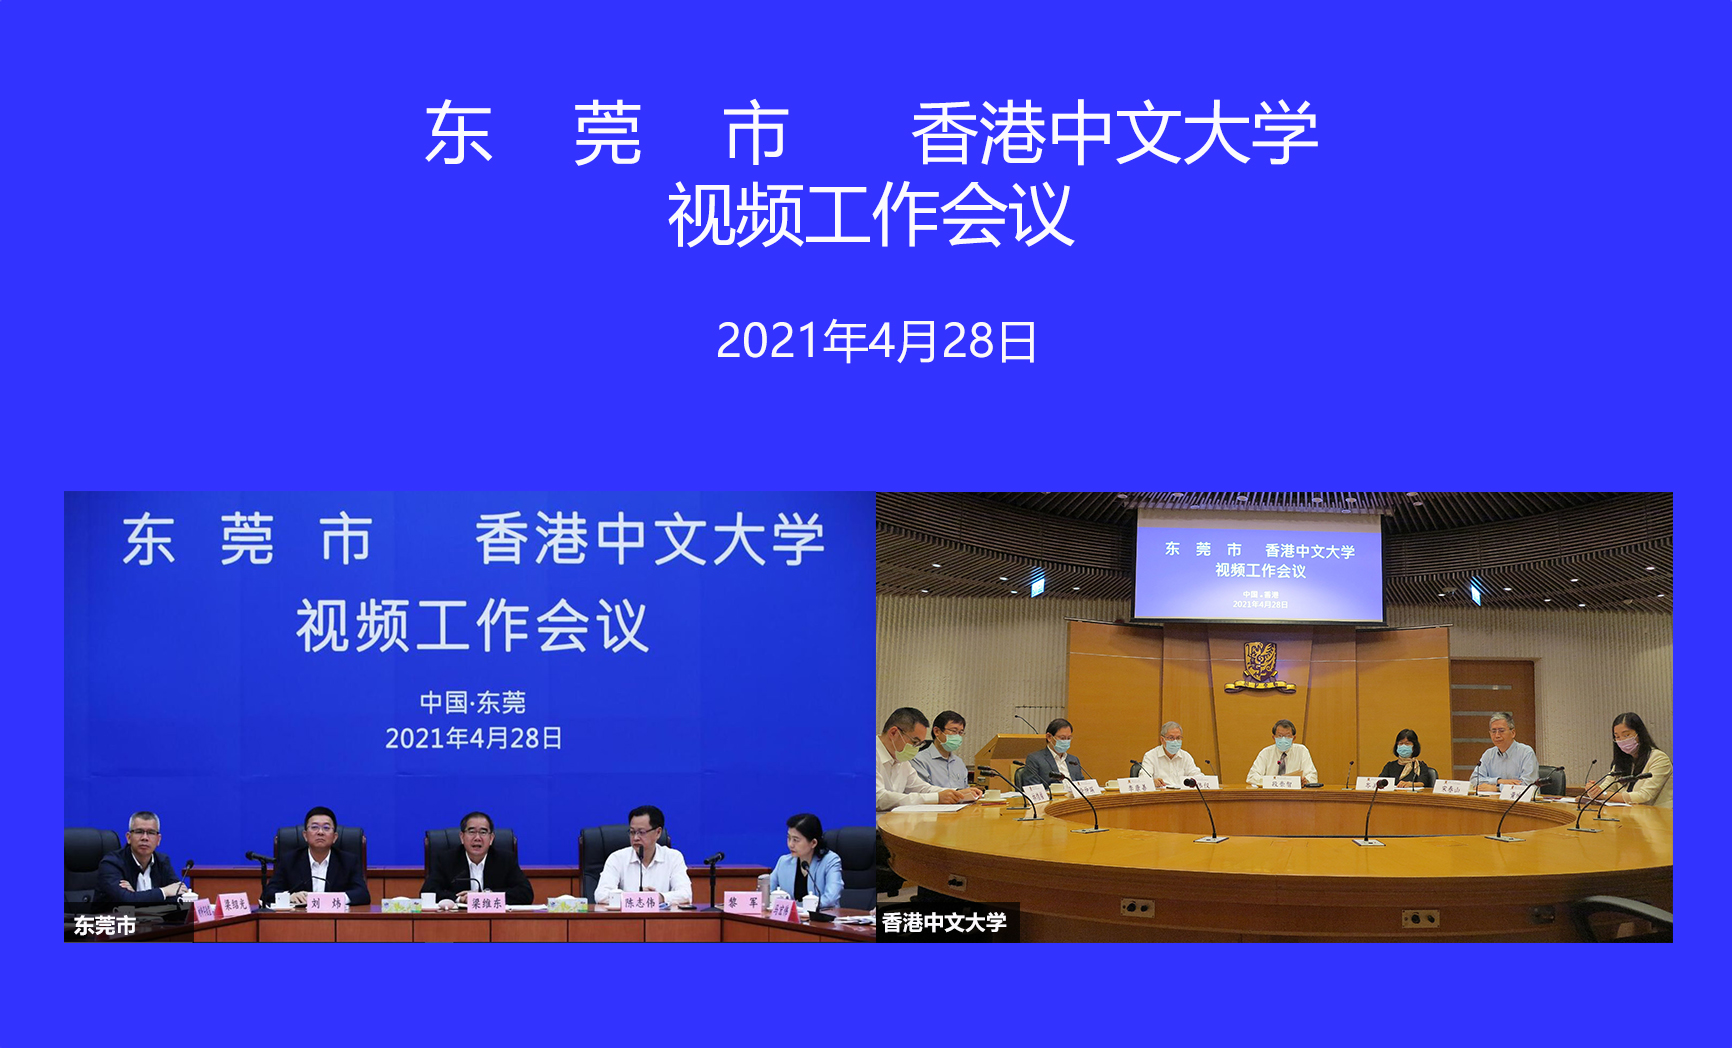 CUHK and Dongguan Municipal Government Discuss Collaborative Plans